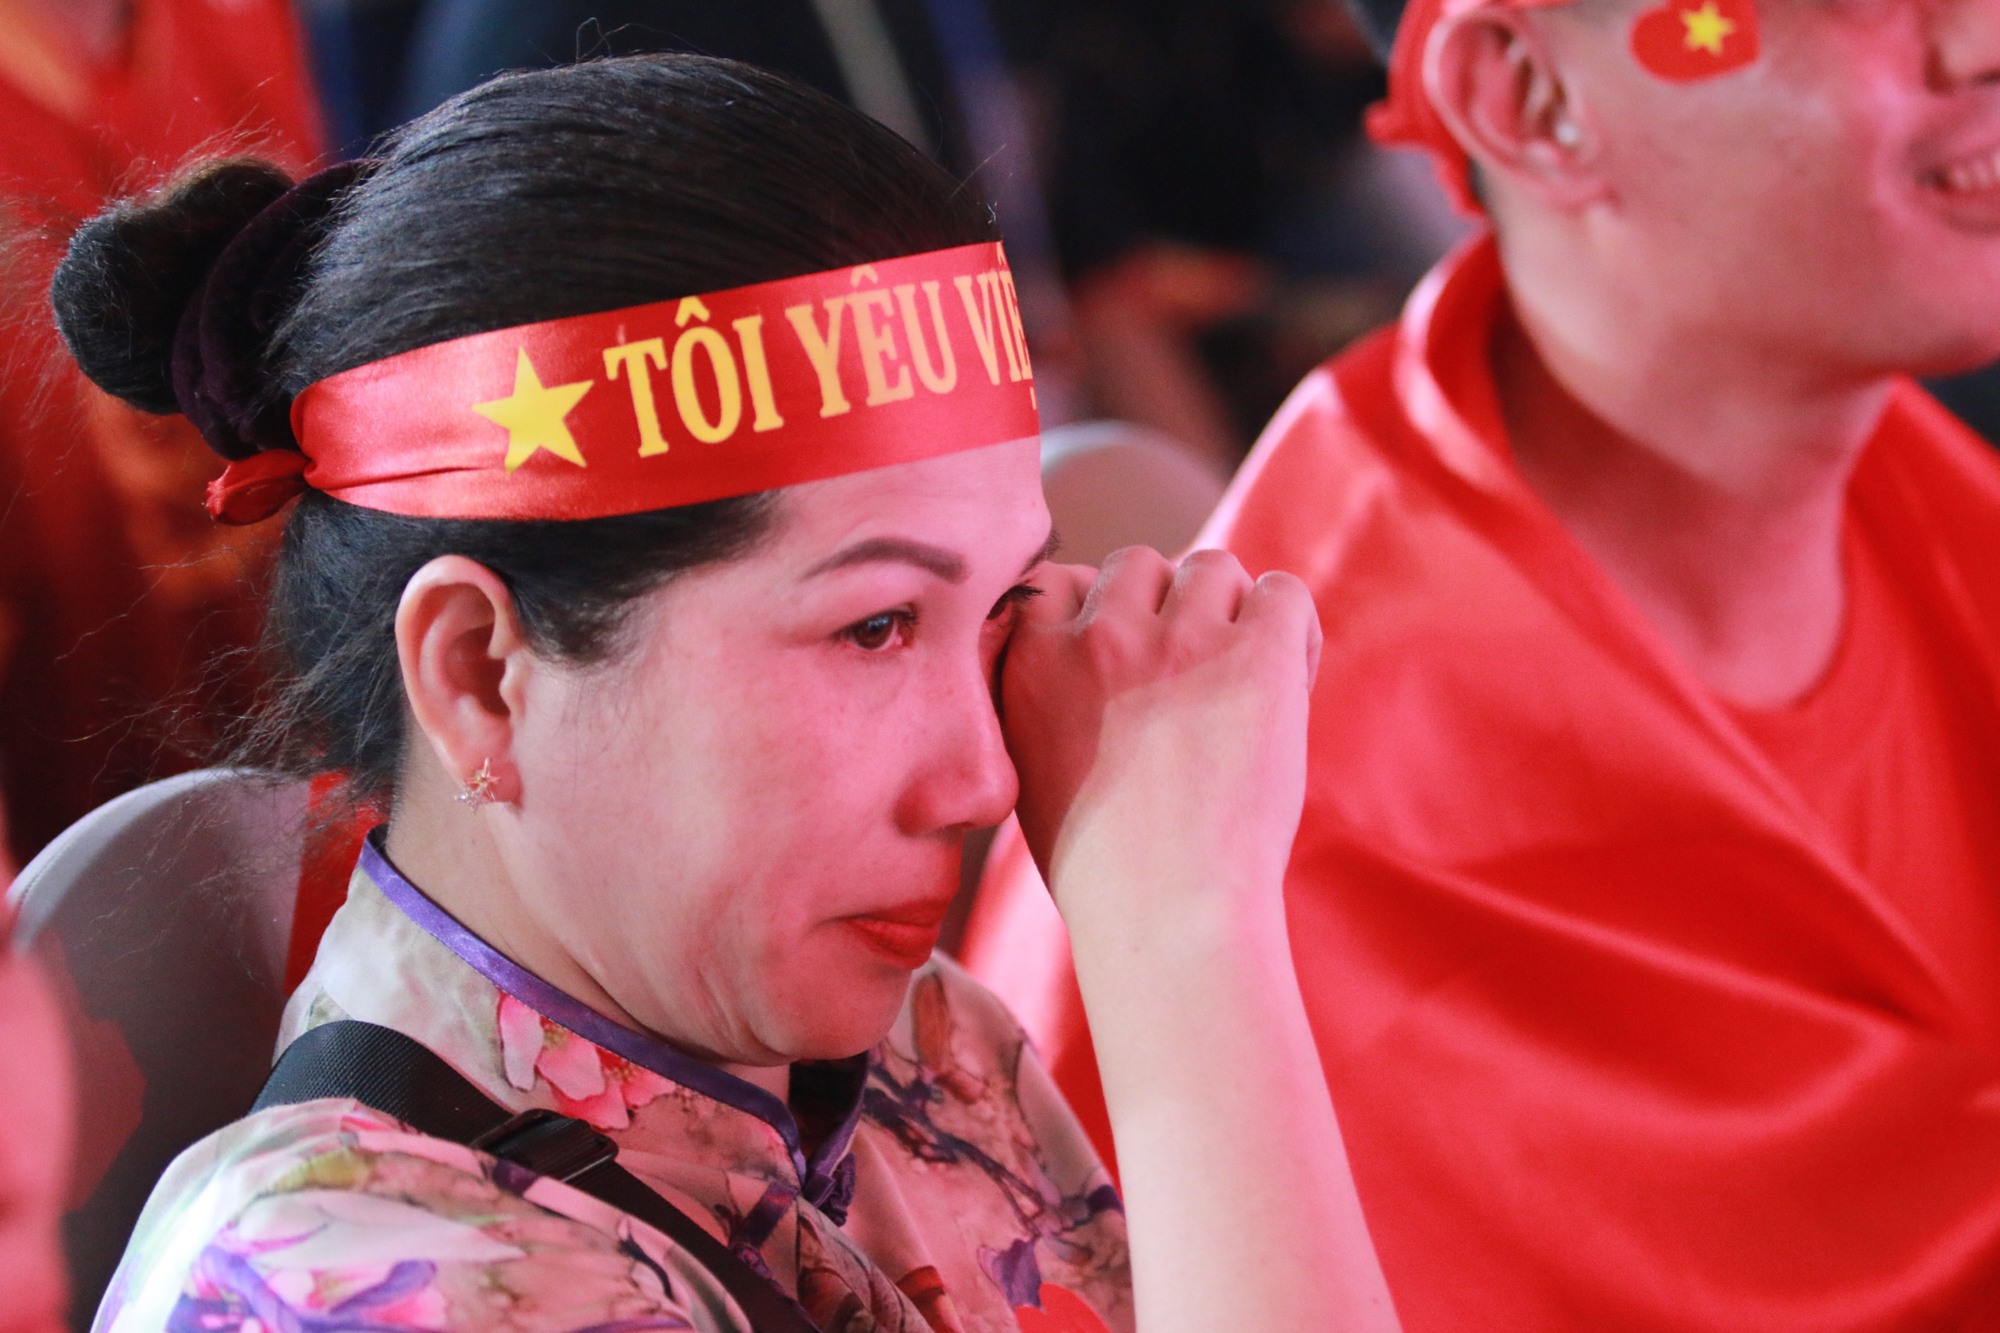 Bạn đã biết rằng đội tuyển Liên Minh Huyền Thoại của Việt Nam đã đoạt HCV tại SEA Games vừa qua chưa? Hình ảnh con trai của Phụ huynh được trao giải thưởng làm nhiều người xúc động và khóc. Chúng ta hãy cùng tìm hiểu sự đáng kính của cậu bé này và gia đình mình.